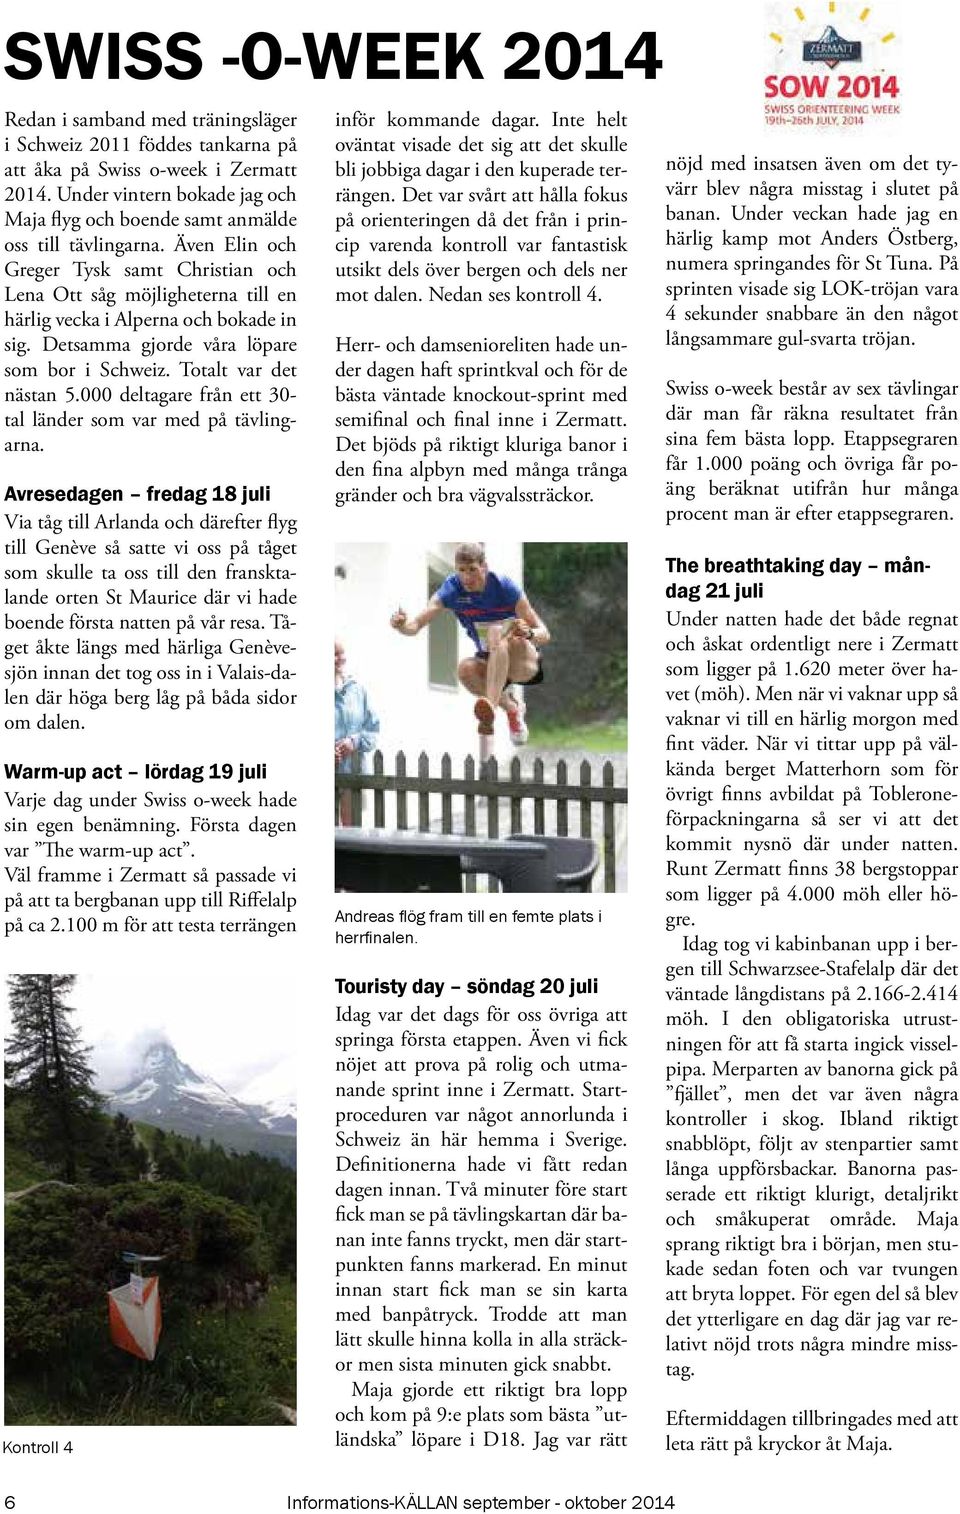 Även Elin och Greger Tysk samt Christian och Lena Ott såg möjligheterna till en härlig vecka i Alperna och bokade in sig. Detsamma gjorde våra löpare som bor i Schweiz. Totalt var det nästan 5.